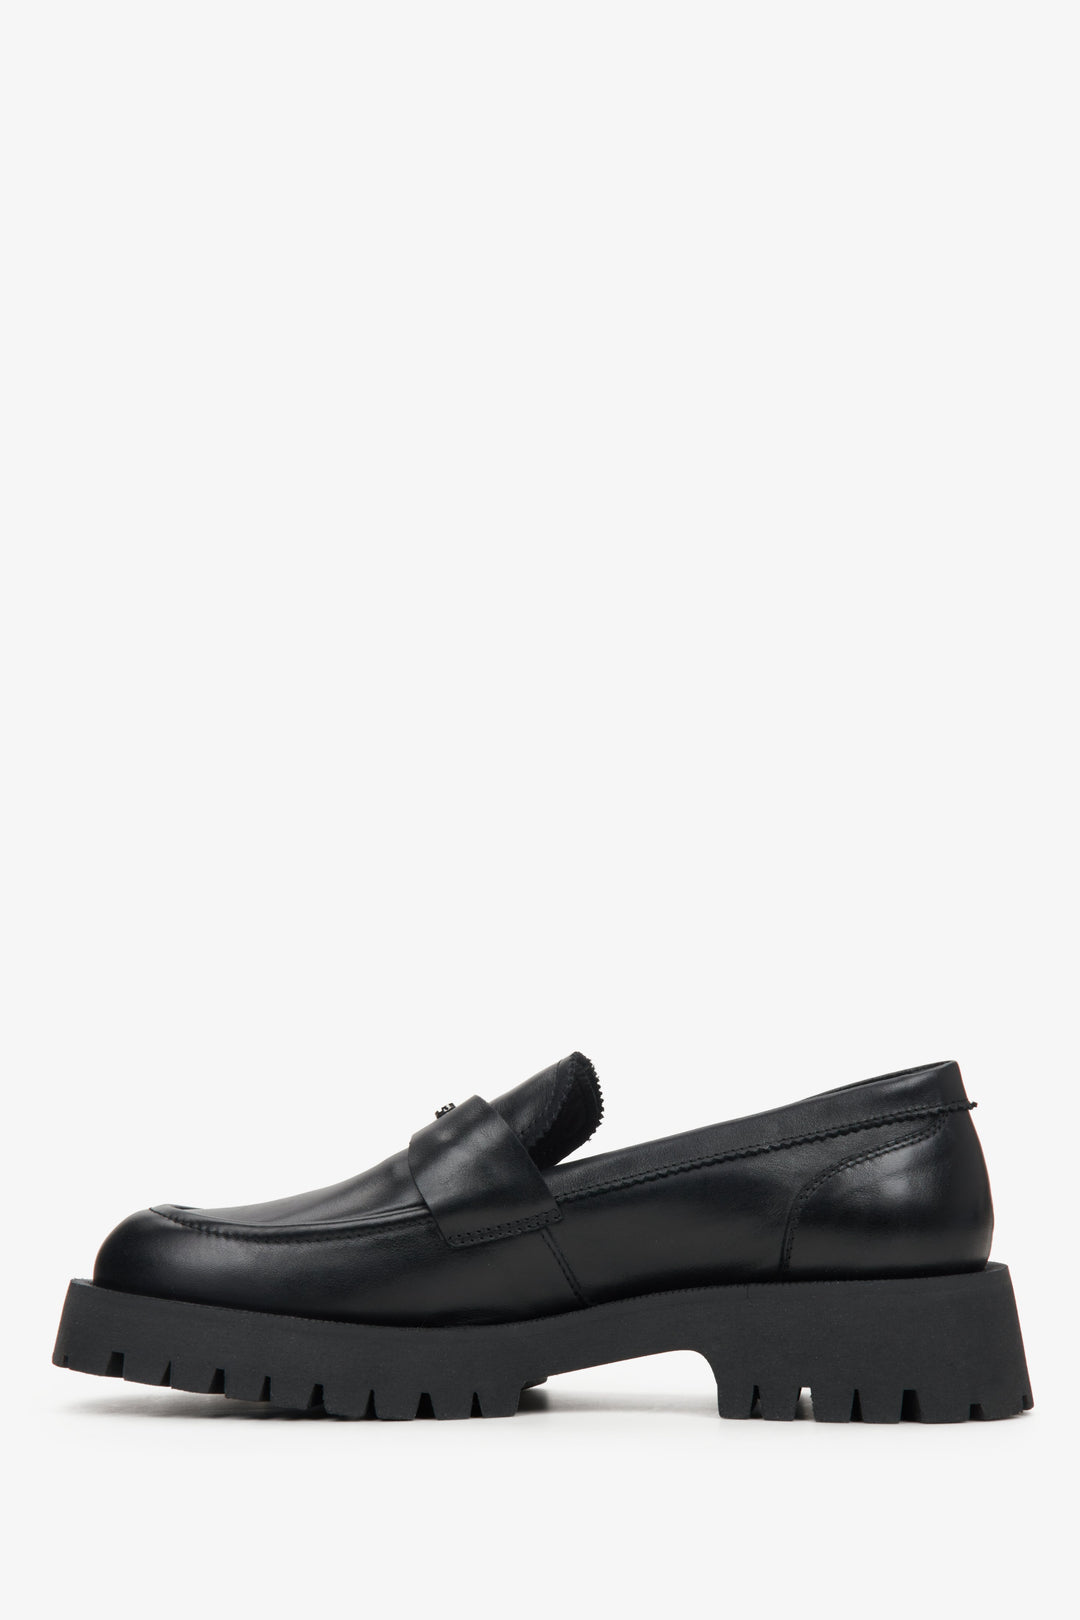 Czarne loafersy damskie ze skóry naturalnej Estro - profil buta.